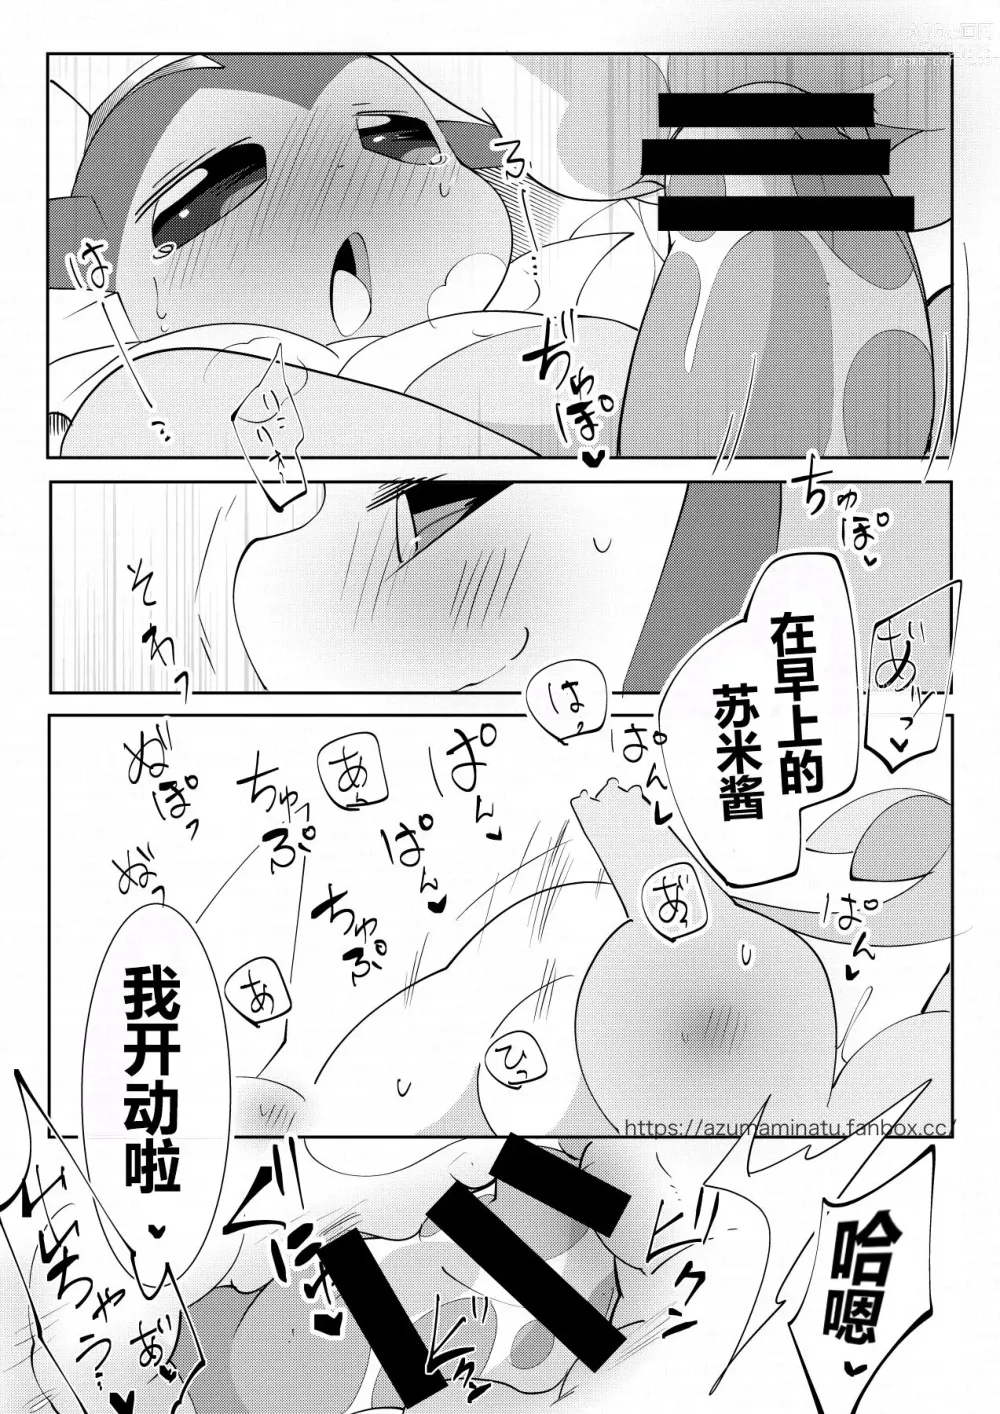 Page 6 of doujinshi Koori no Riko-chan to Mizu no Sumi-kun no Ikioi Manga